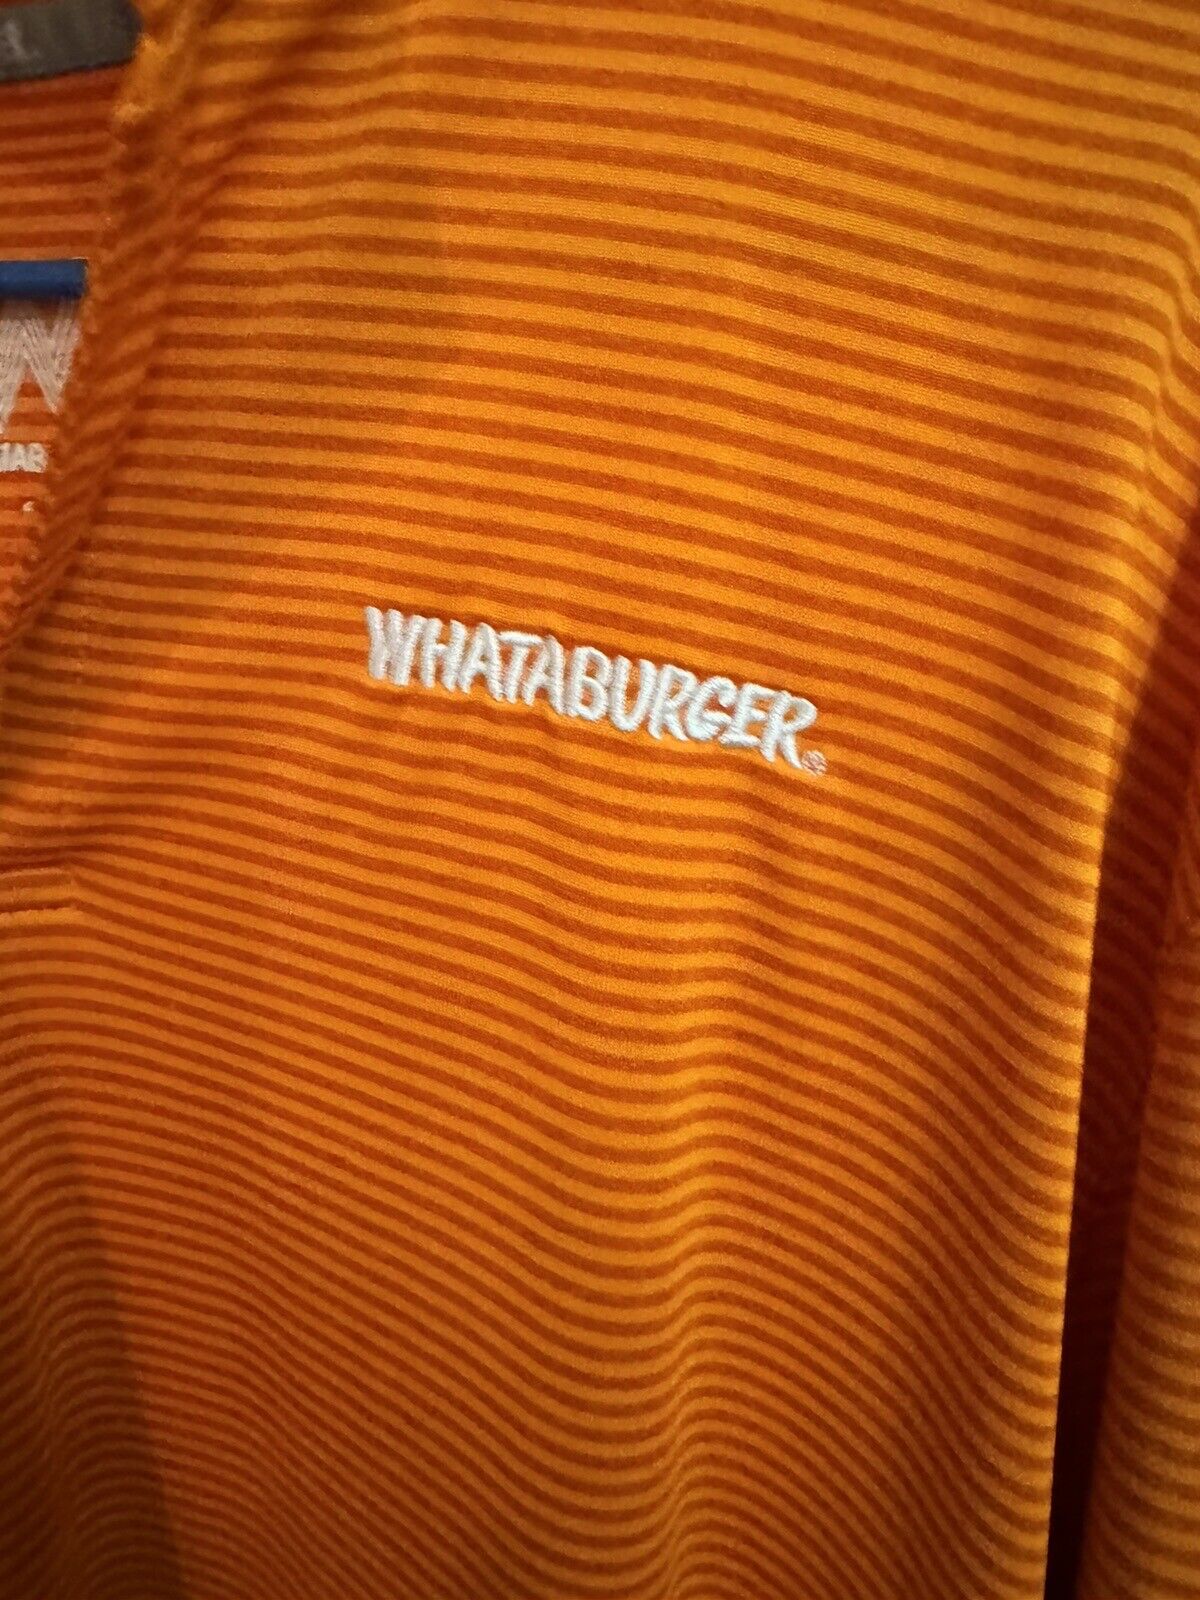 Whataburger Employee Uniform Mens Size Large Stri… - image 3